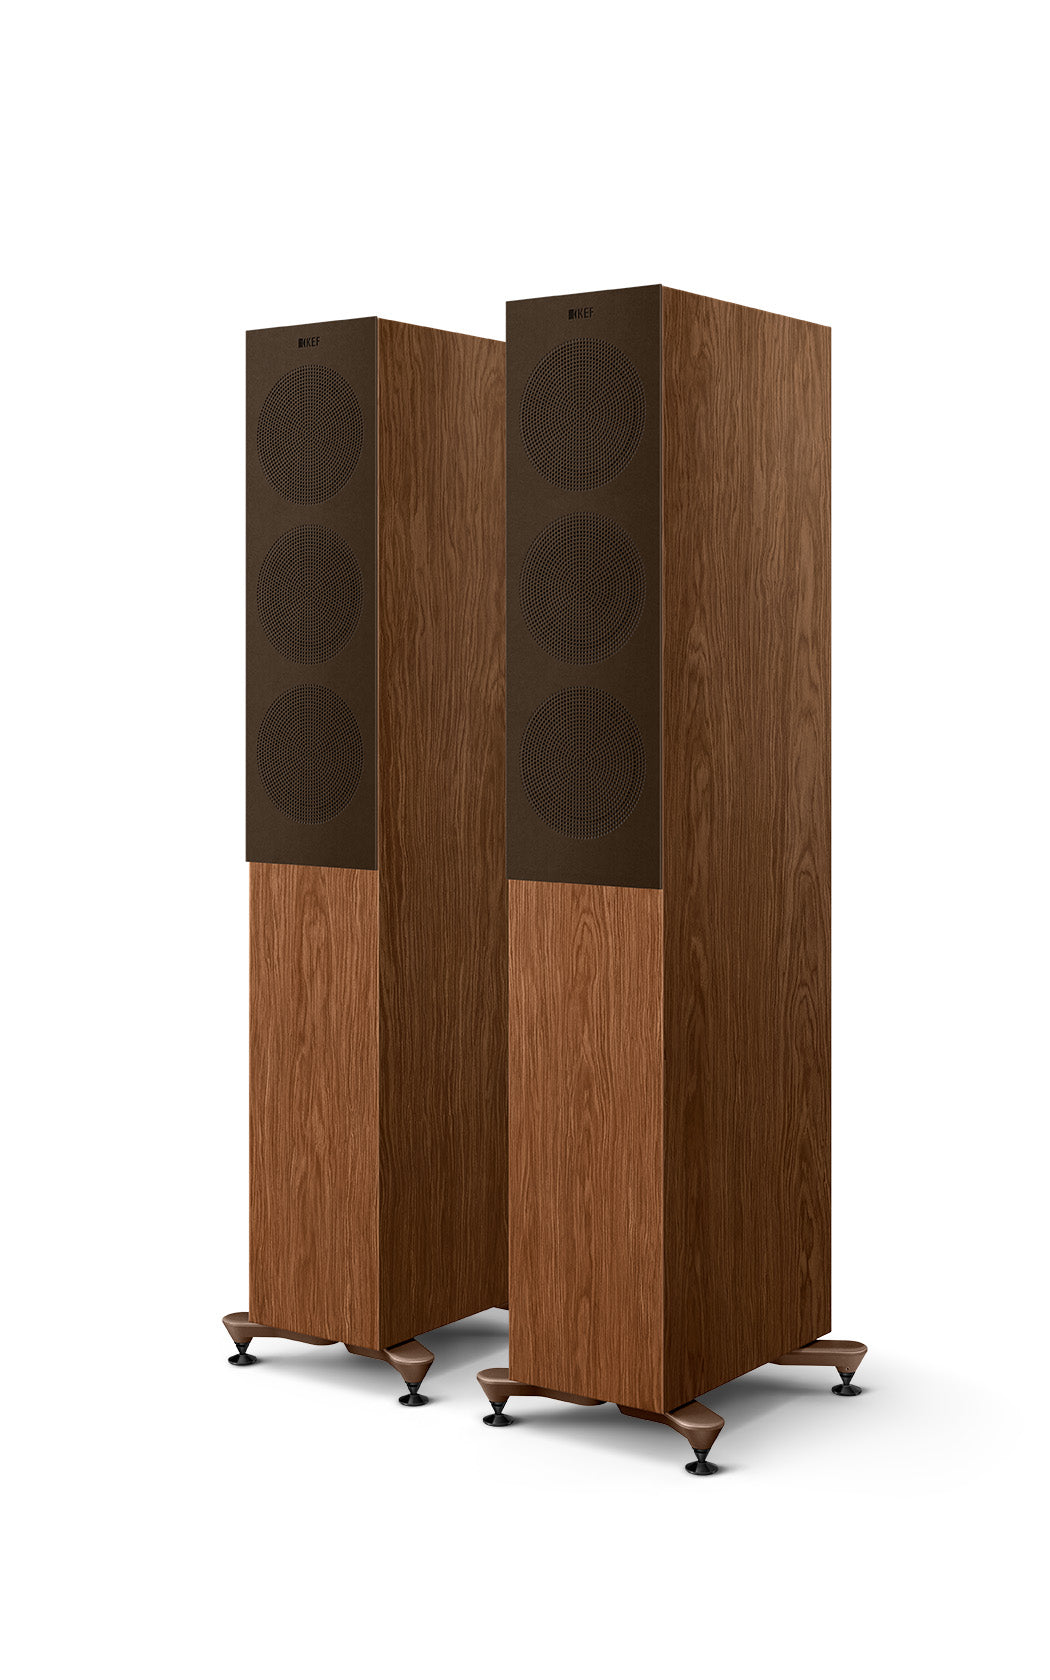 KEF R5 Meta 3-way Floorstanding Speakers